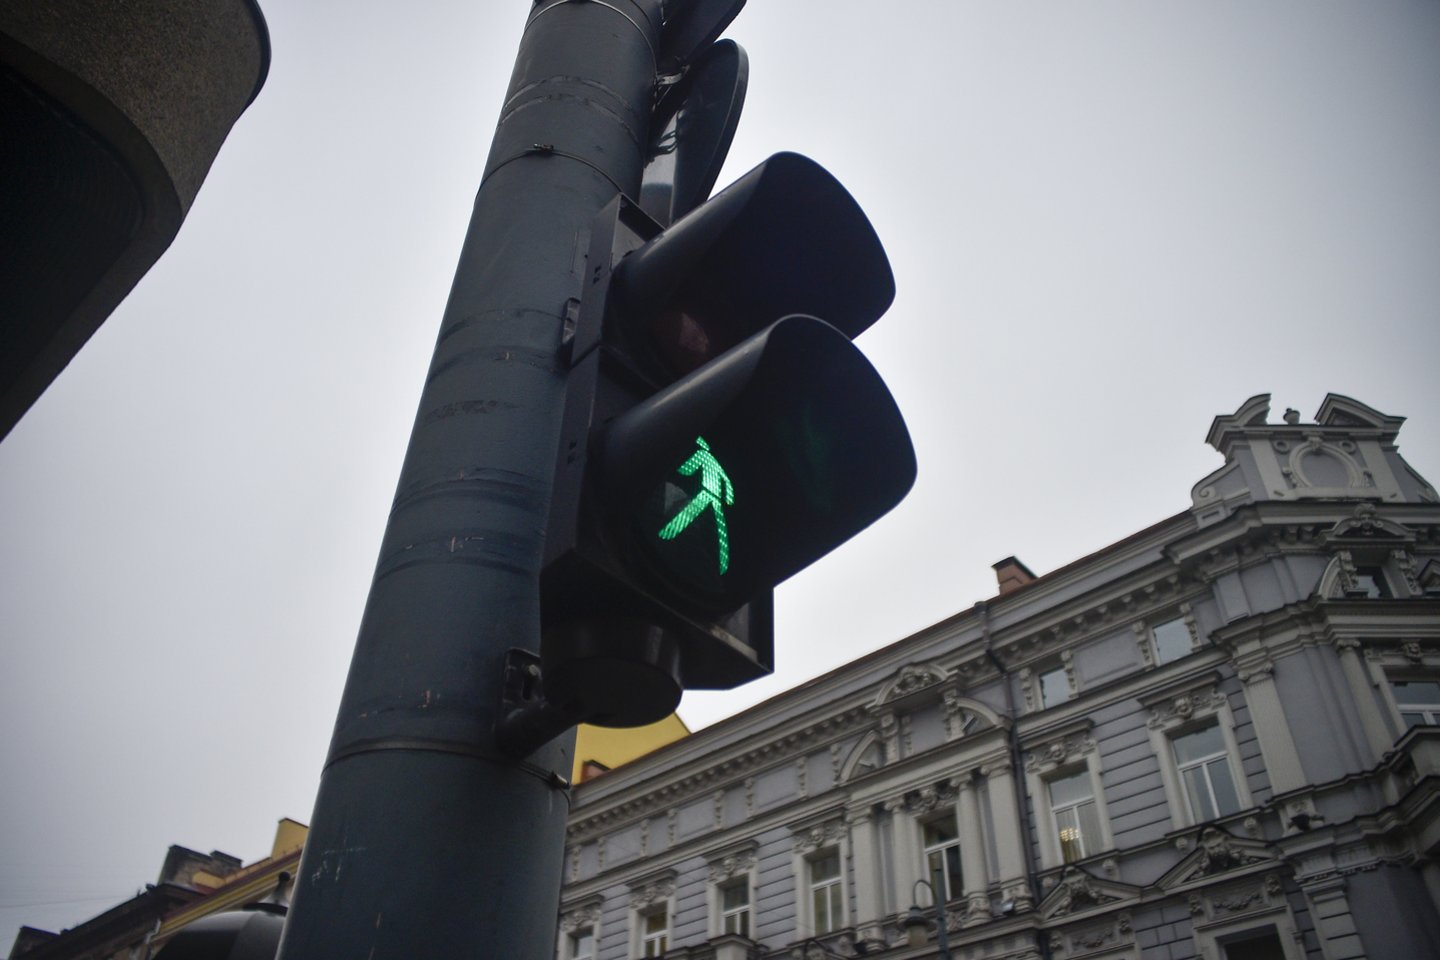 Žalias signalas pėsčiajam įsijungia tik tam tikru laiku.<br>V.Ščiavinsko nuotr.